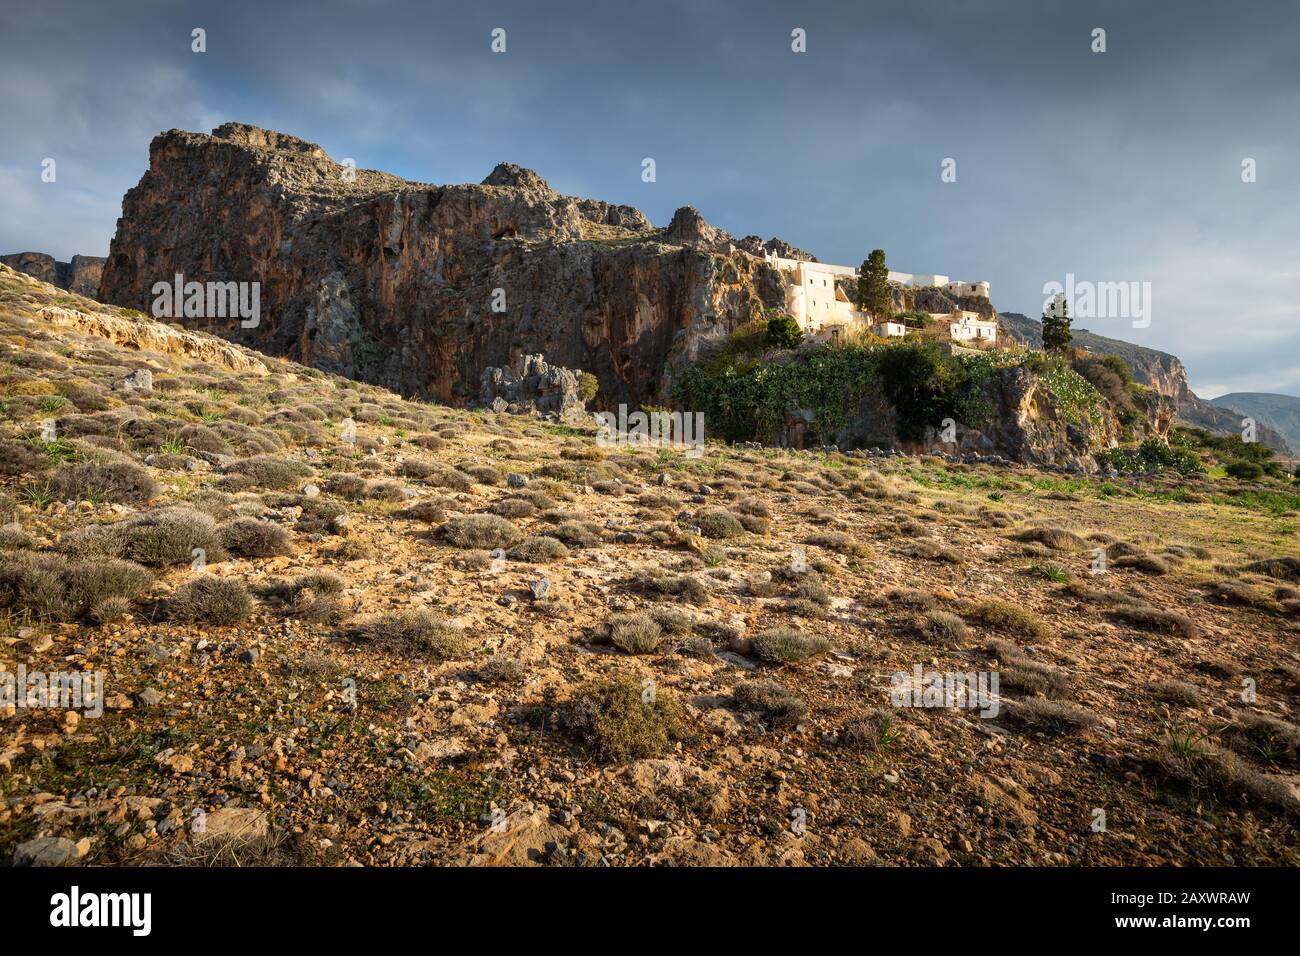 Kapsa monastery near Kalo Nero village in southern Crete. Stock Photo